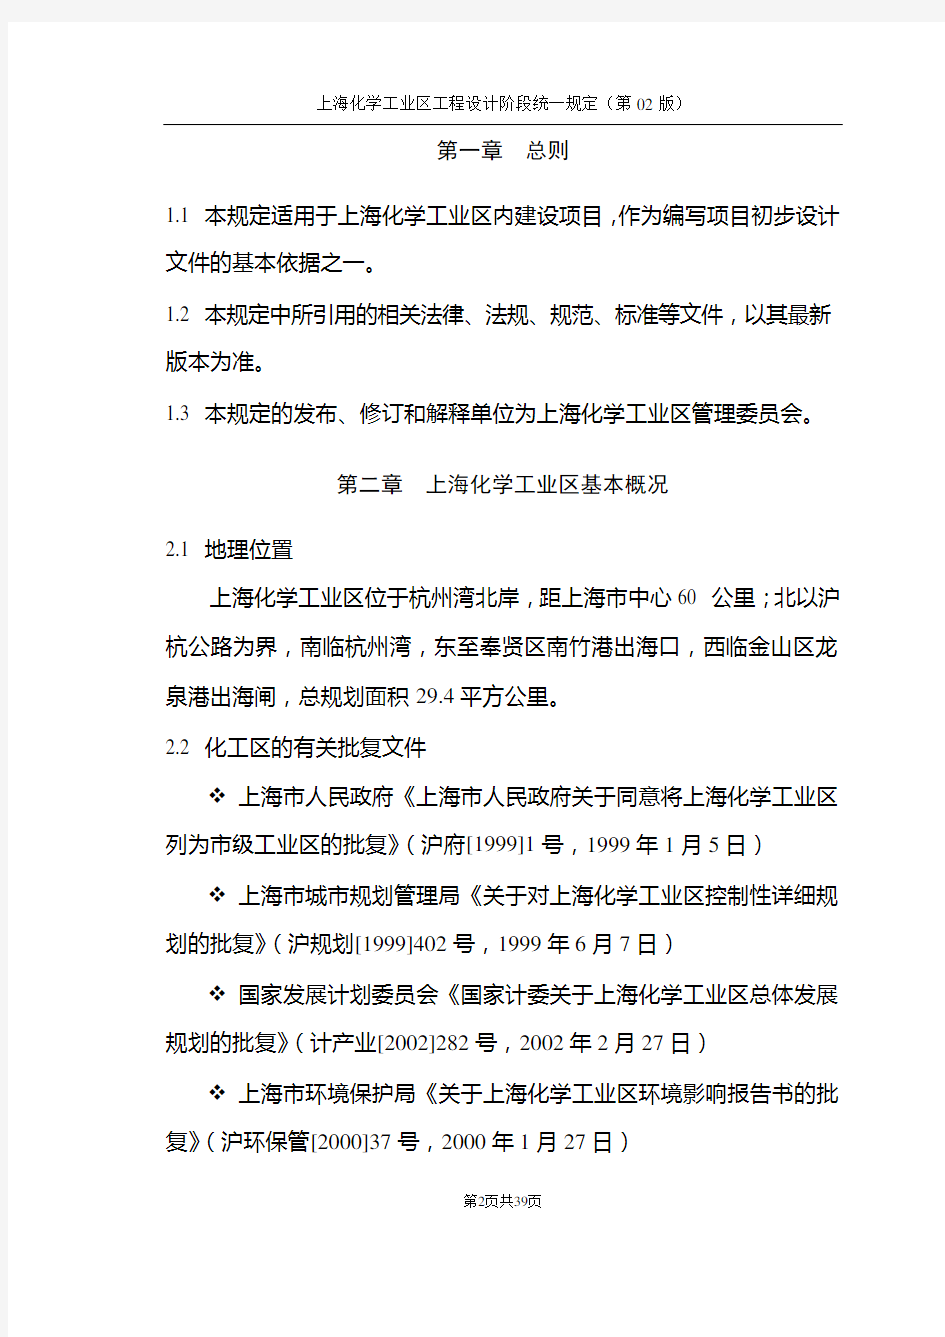 上海化学工业区工程设计阶段统一规定-02版